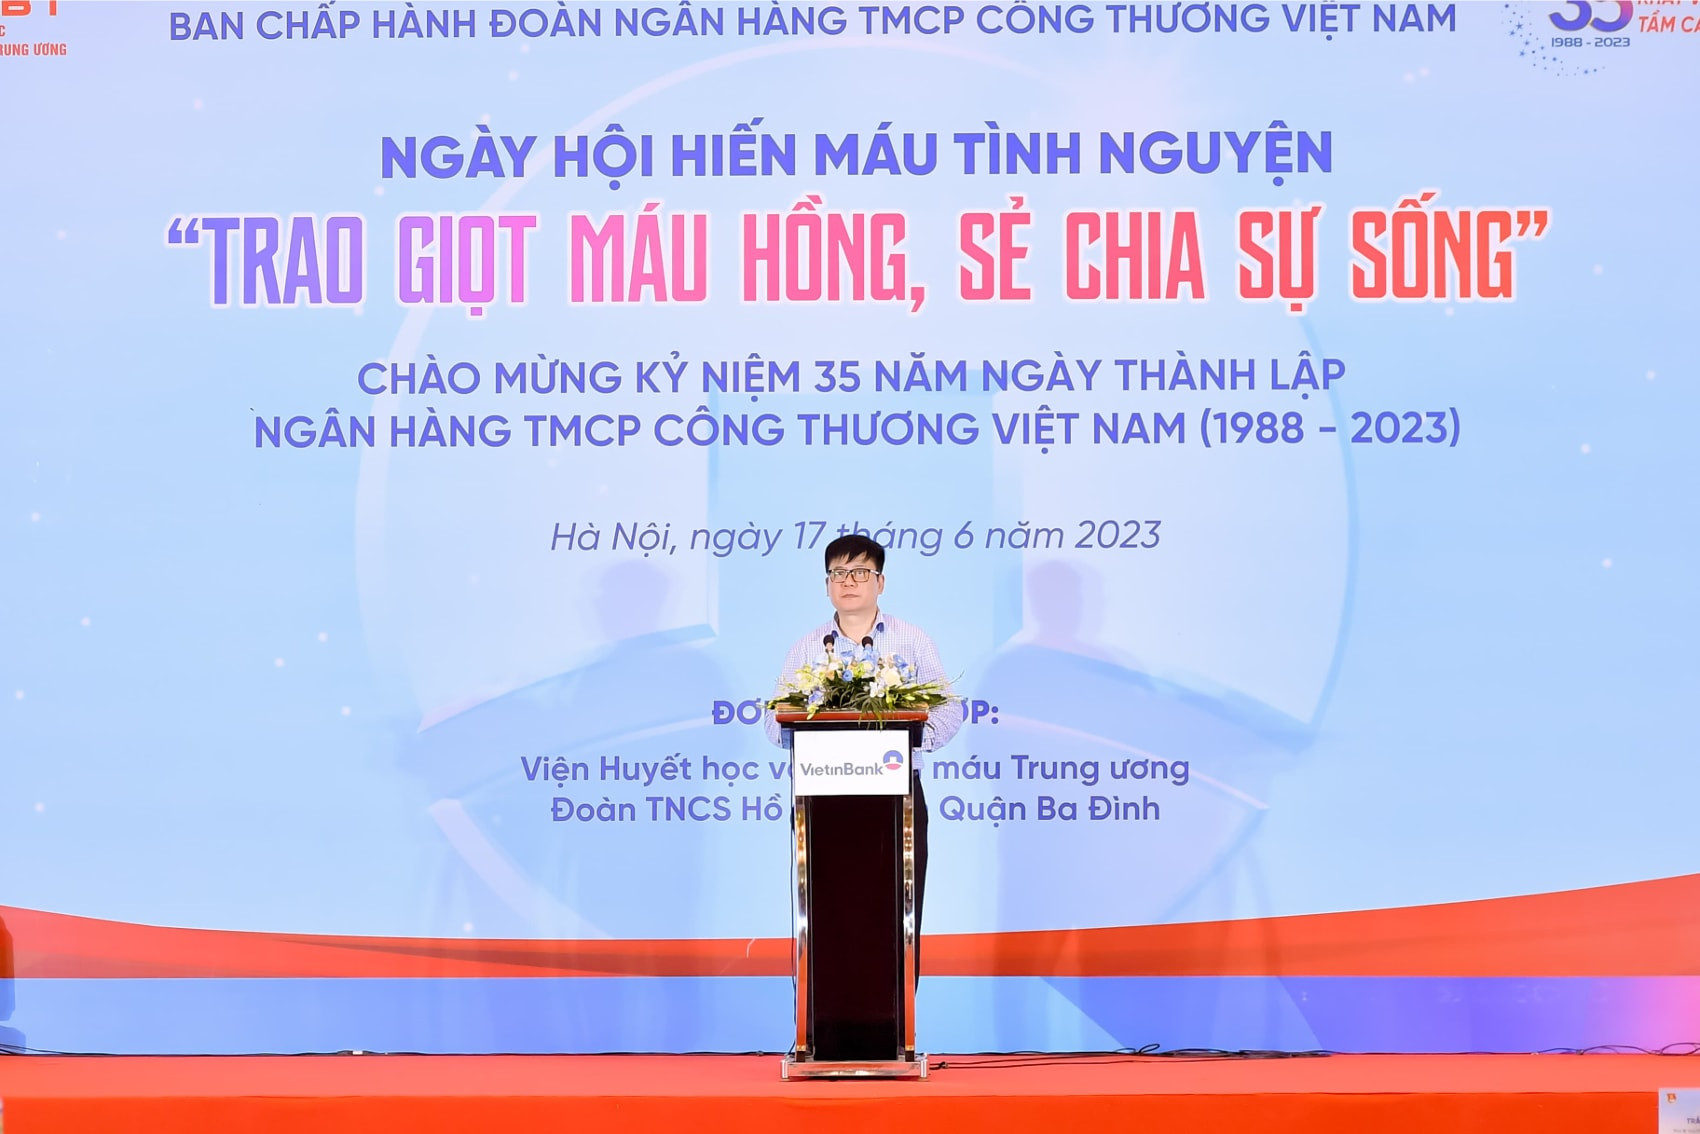 Đ/c Trần Kiên Cường – Phó Bí thư Thường trực Đảng ủy VietinBank phát biểu tại Ngày hội hiến máu tình nguyện.